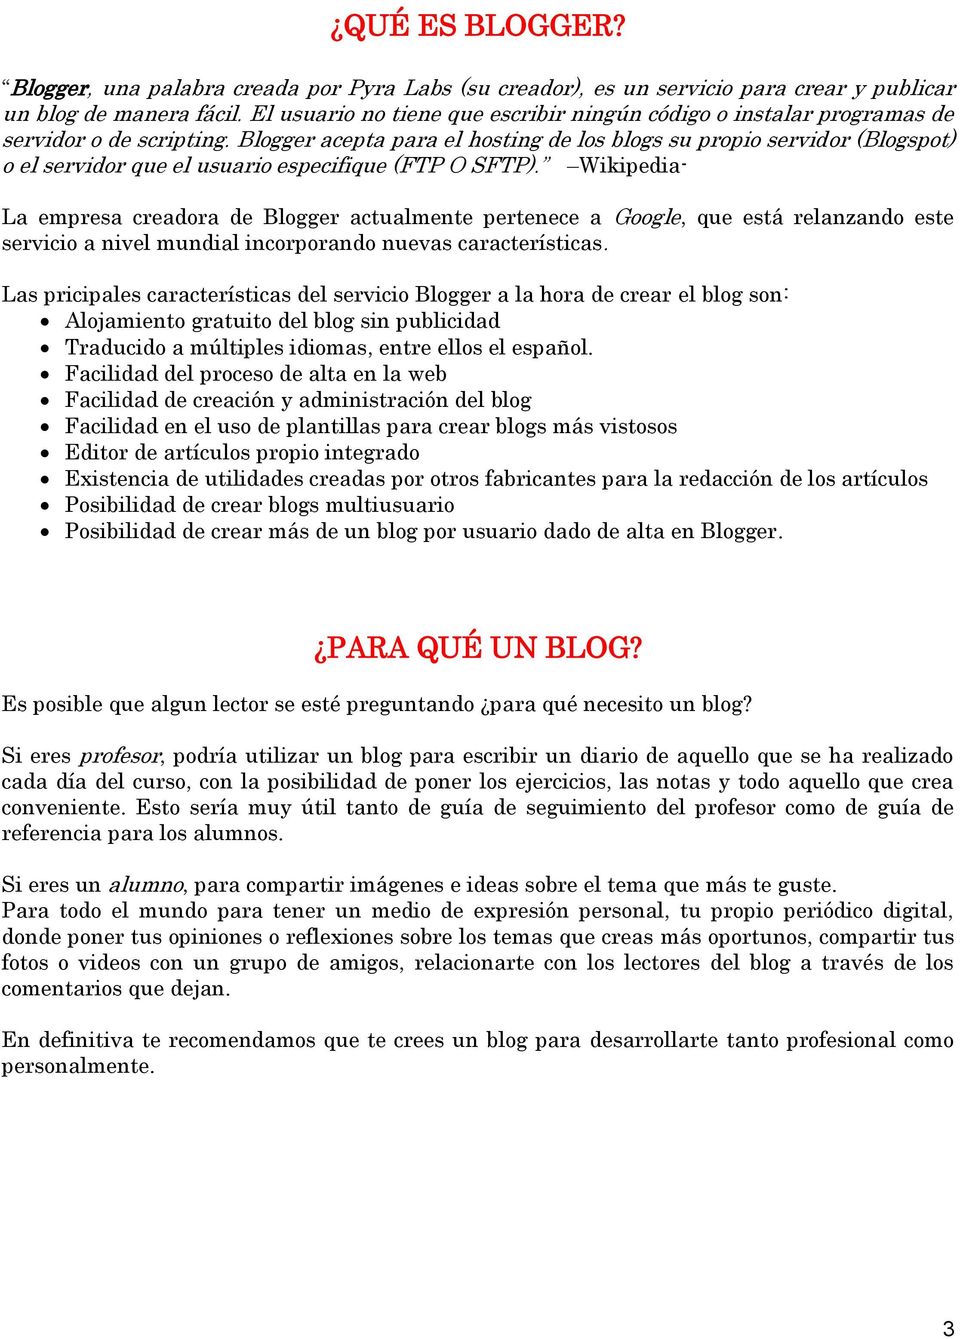 Blogger acepta para el hosting de los blogs su propio servidor (Blogspot) o el servidor que el usuario especifique (FTP O SFTP).